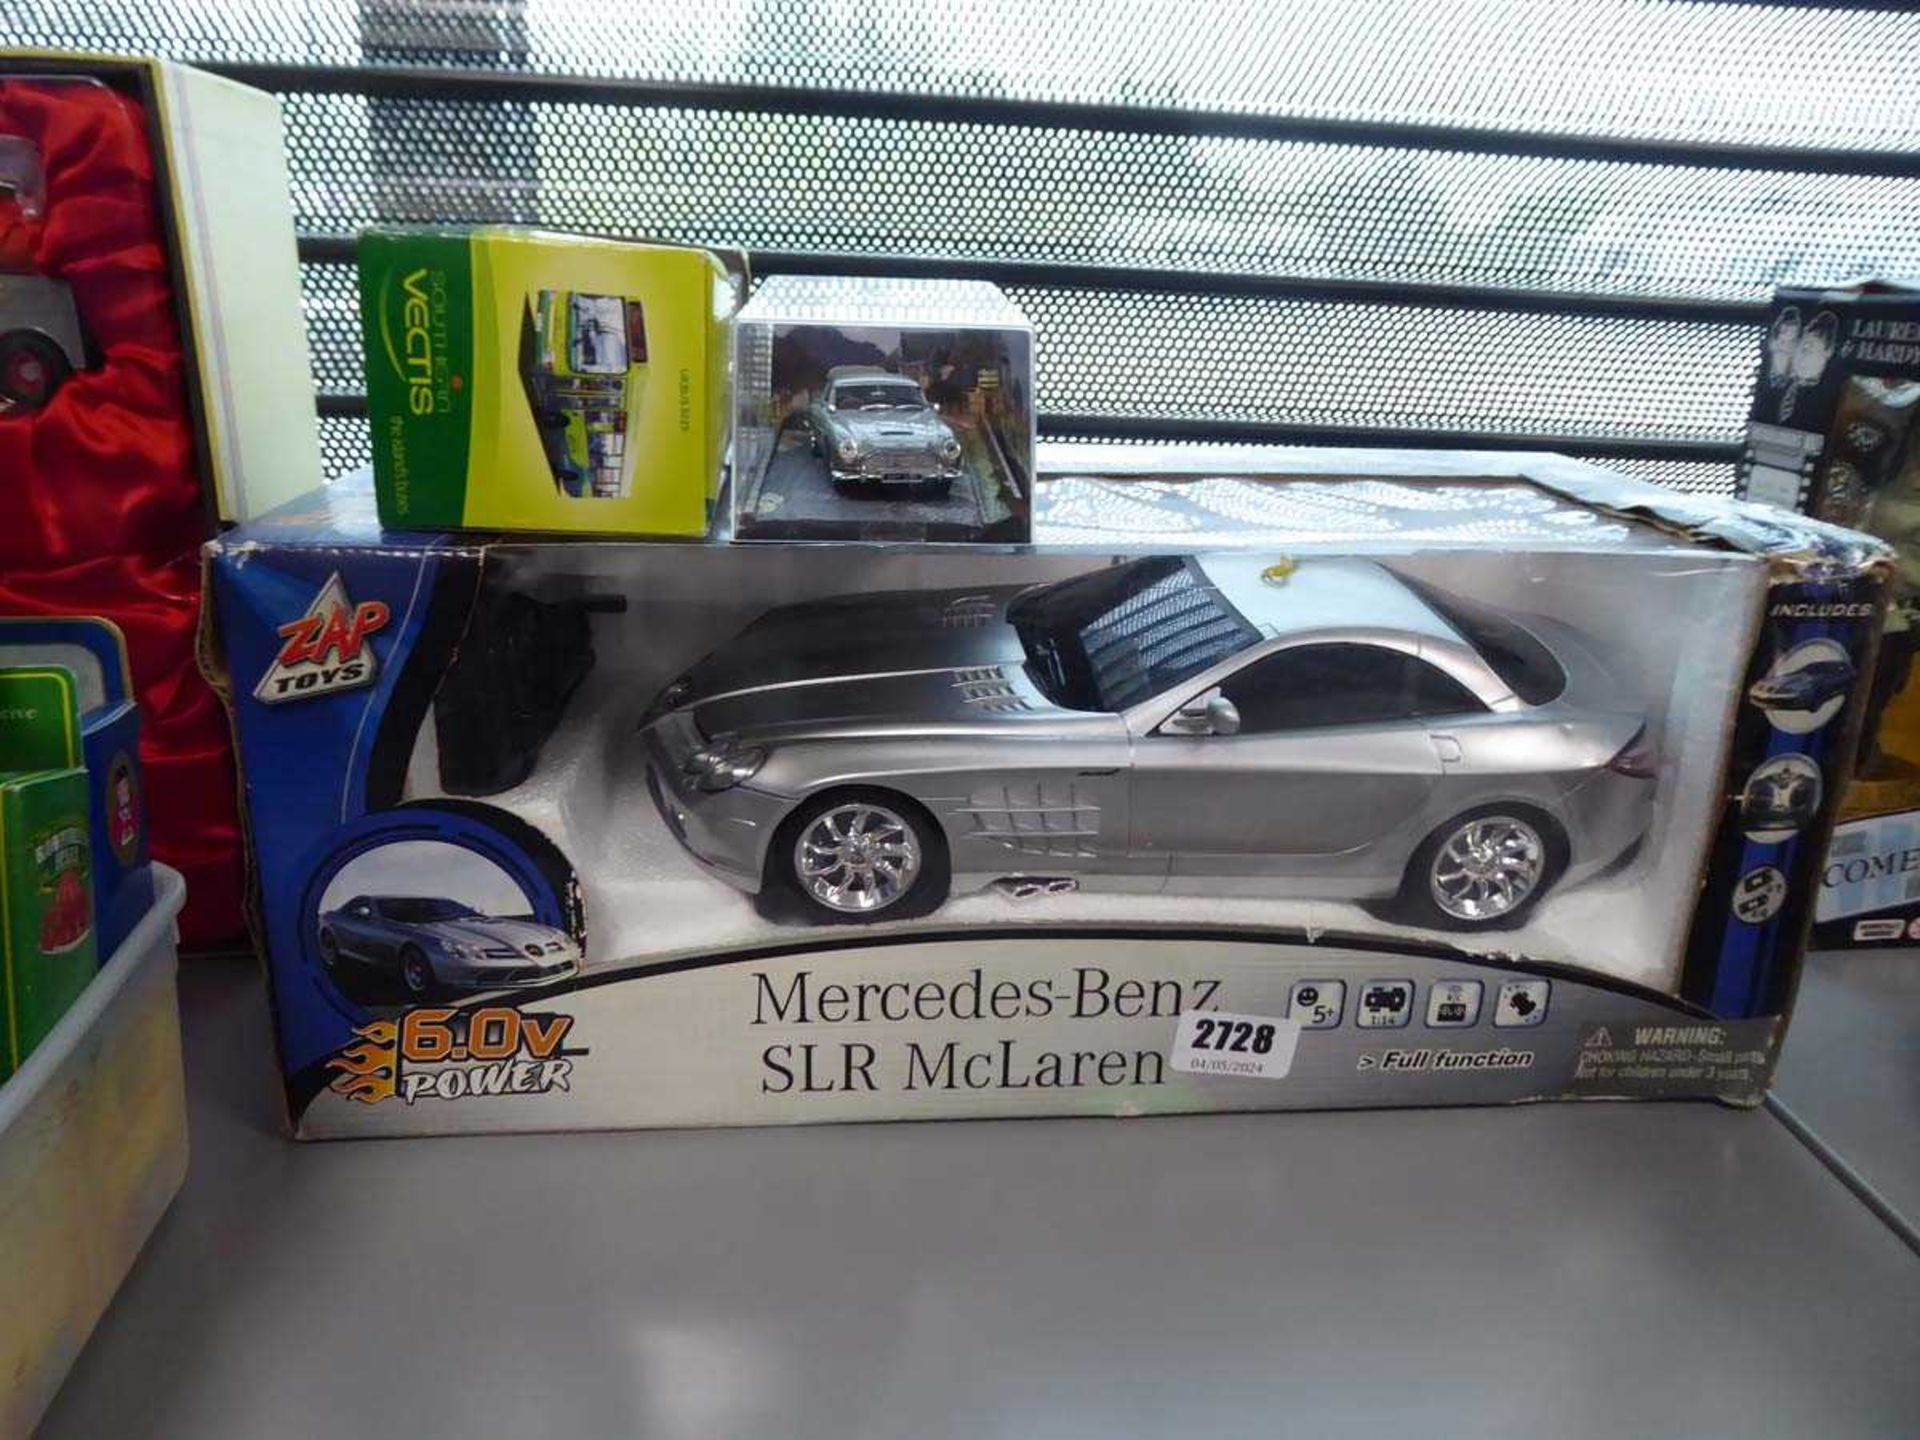 Mercedes-Benz SLR McLaren diecast model, Aston Martin Thunderball model and Vectis Bus model